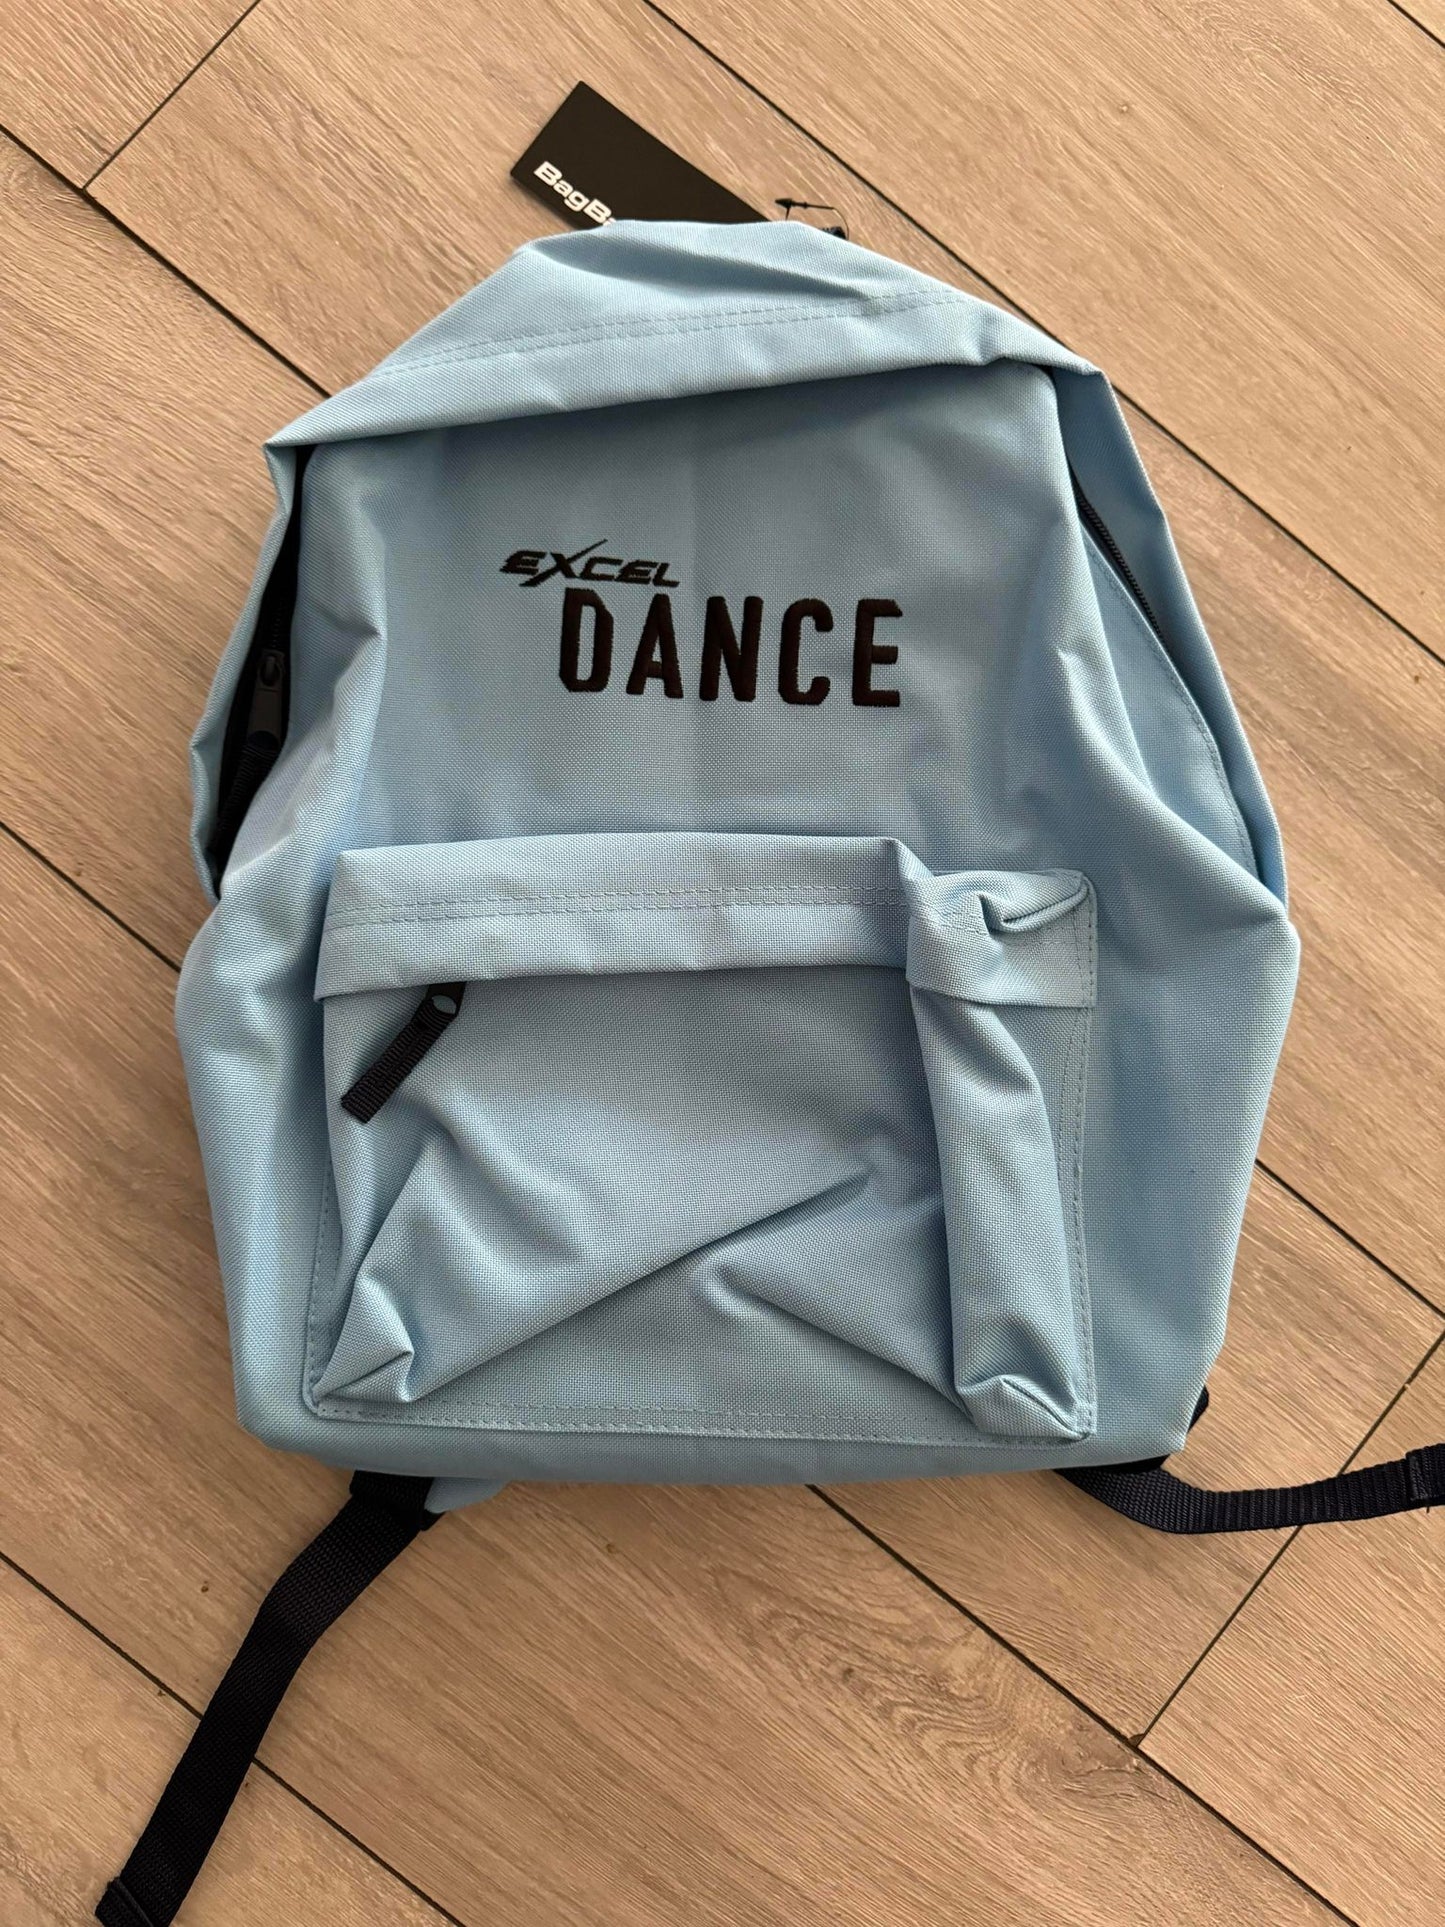 Excel Dance Backpack